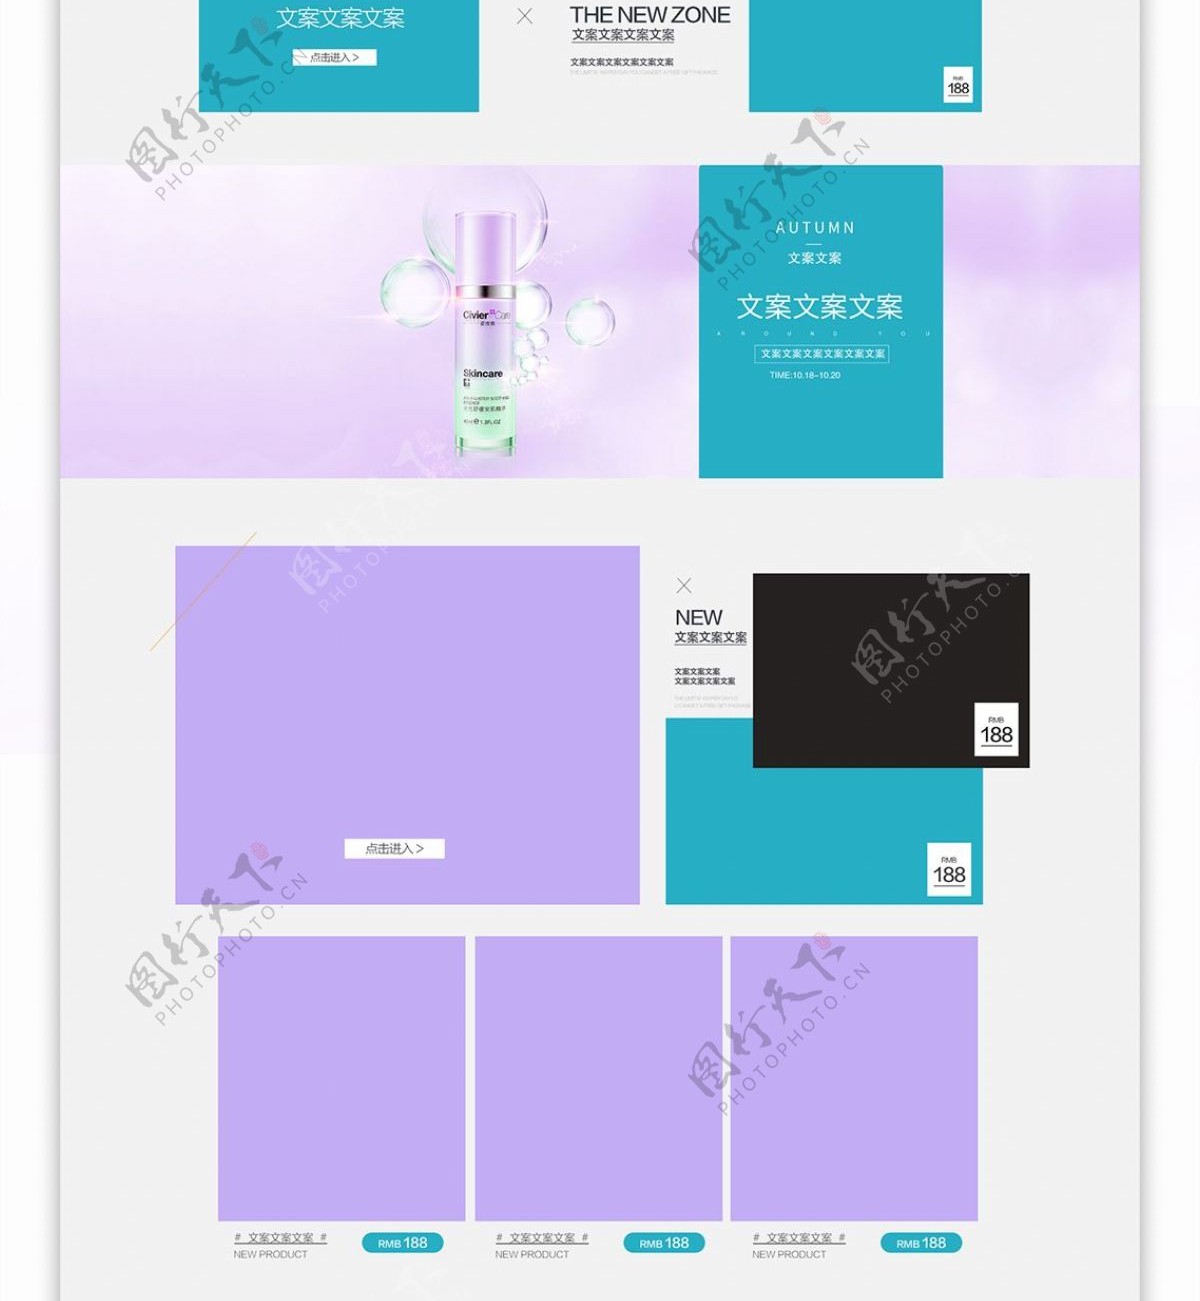 促销狂欢紫色美妆首页模板PSD源文件